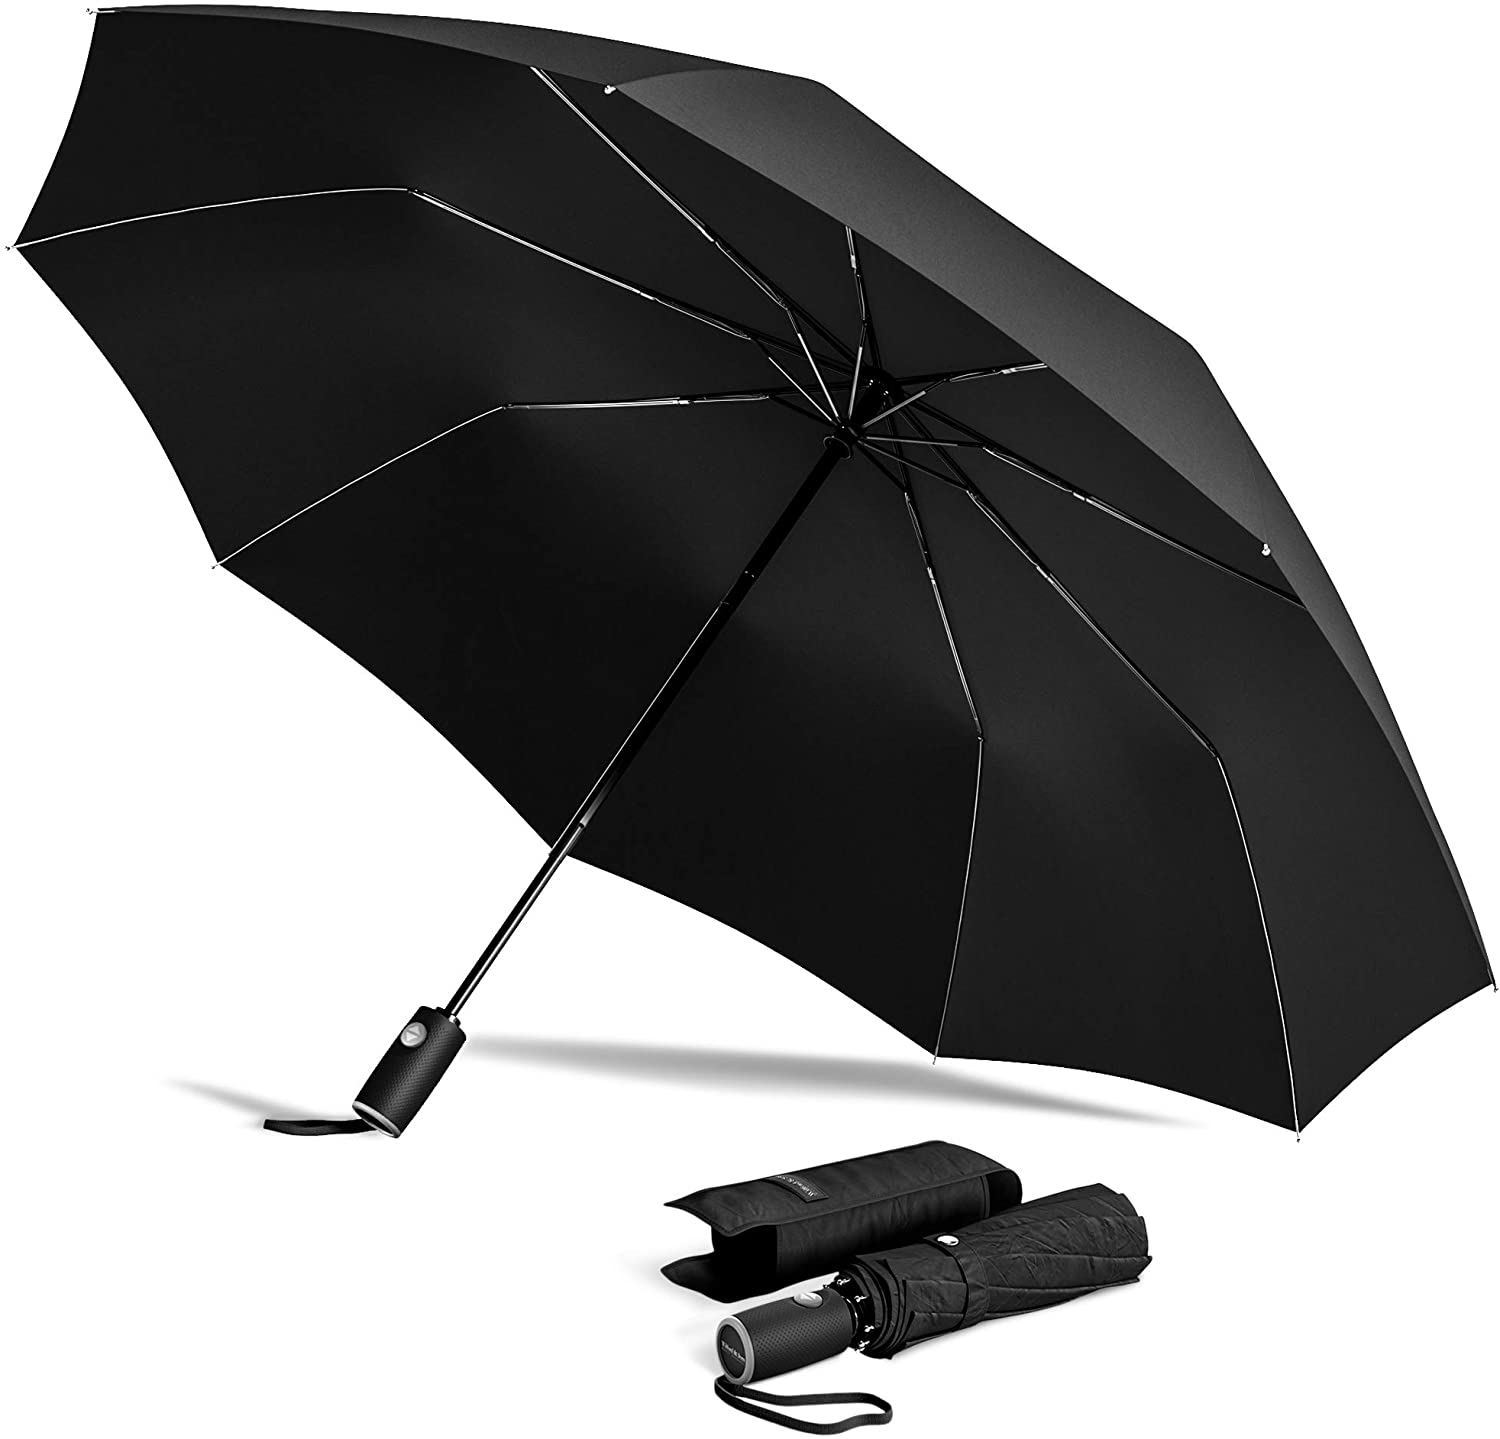 Wilford & Sons Regenschirm Taschenschirm Sturmfest